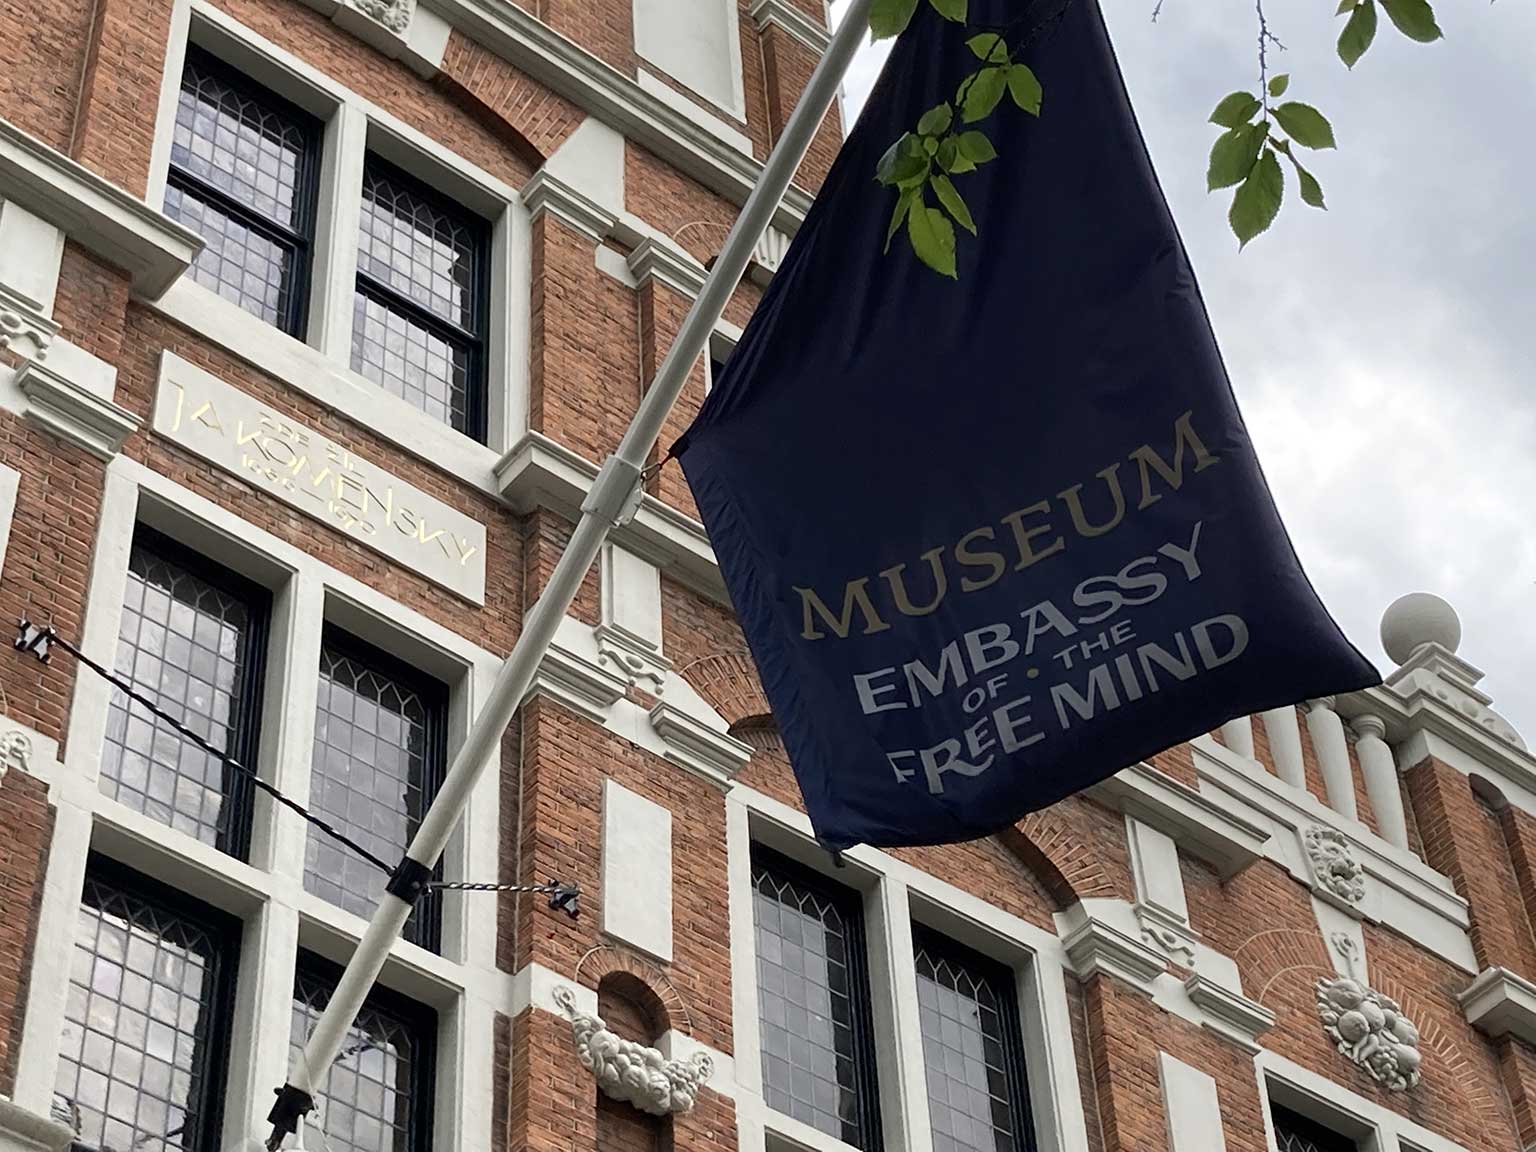 Huis met de Hoofden, Amsterdam, vlag van de Embassy of the Free Mind en plaquette ter herinnering aan Comenius